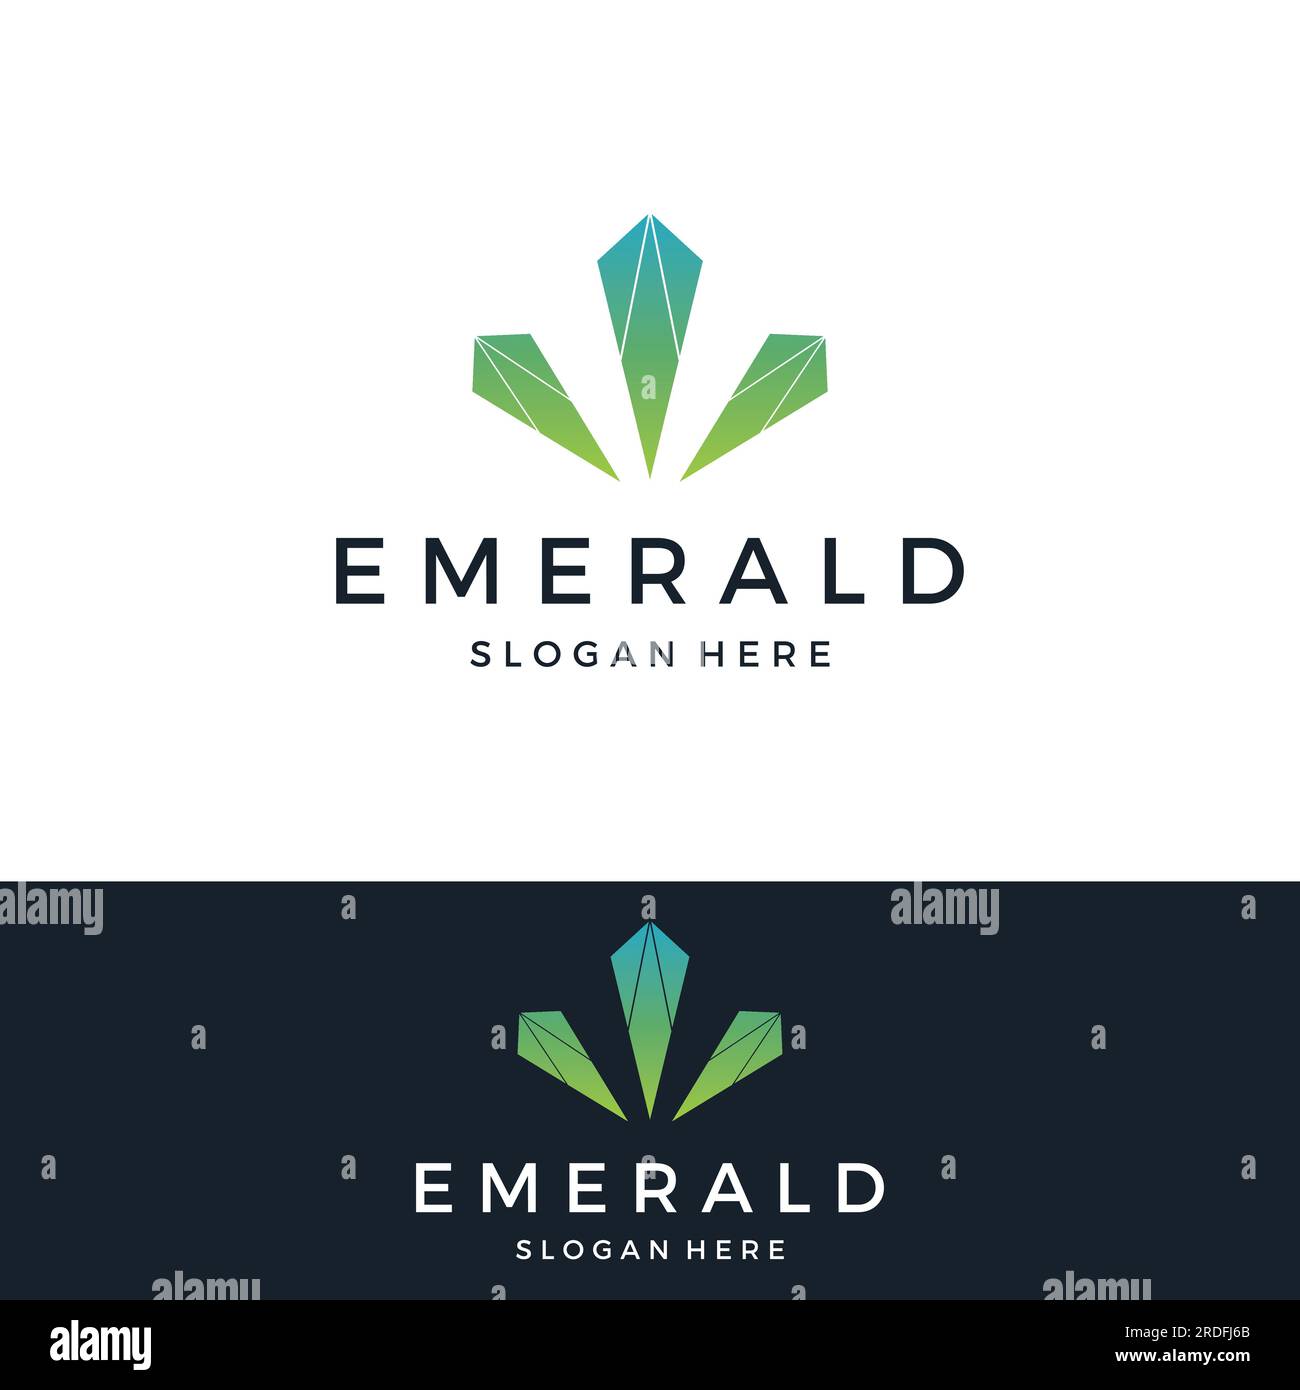 Emerald Clothing Co. Logo By Design By Gemzki 25833 - Designhill